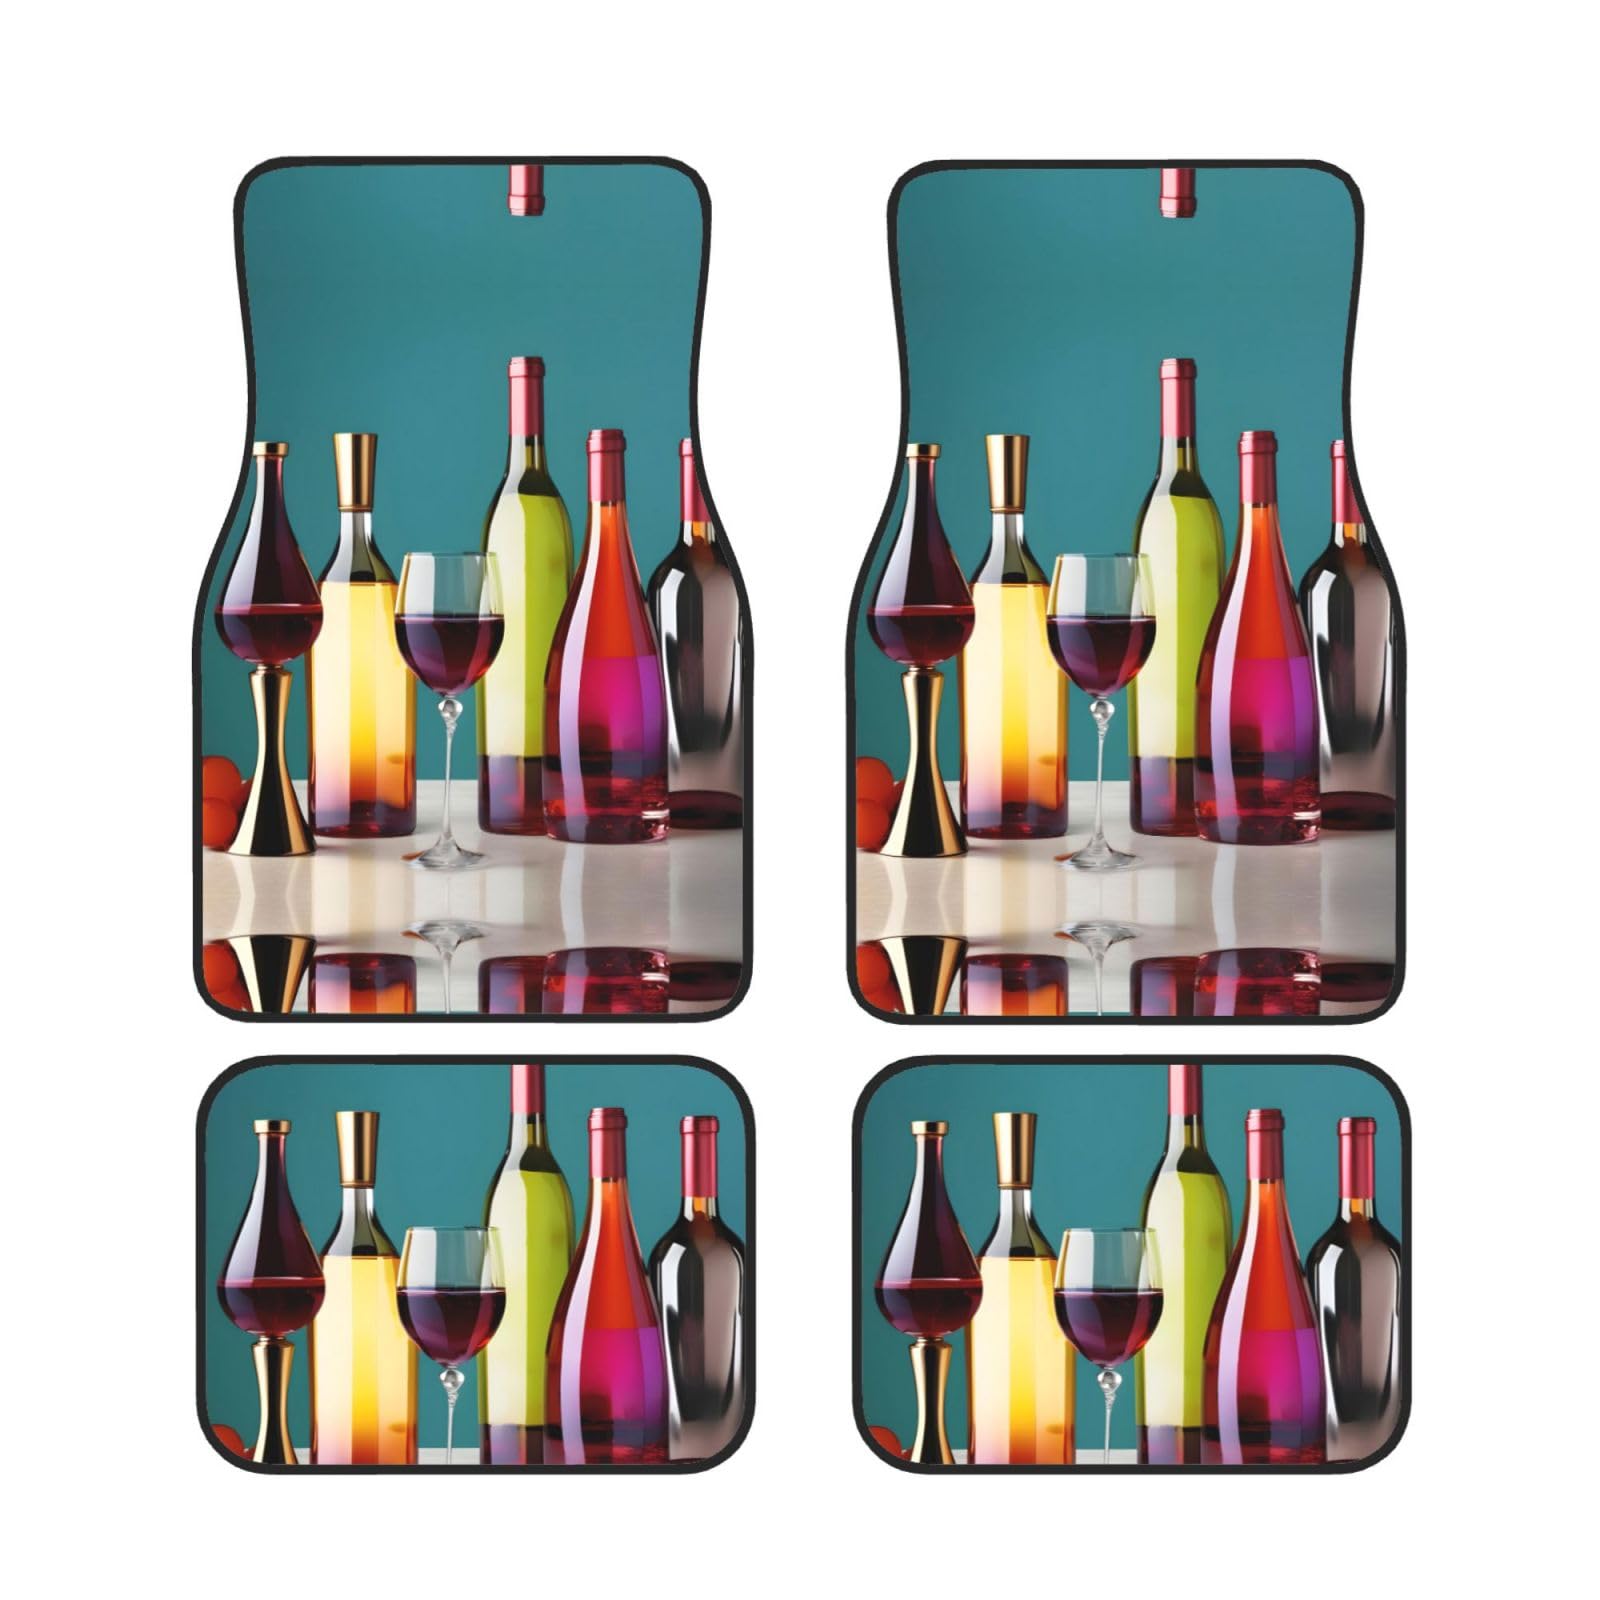 Premium Automatten-Set - Ihr Autoboden mit elastischem und weichem Gummi - inklusive 4 Cocktailgläsern und Weinflaschenlos von TradesForU